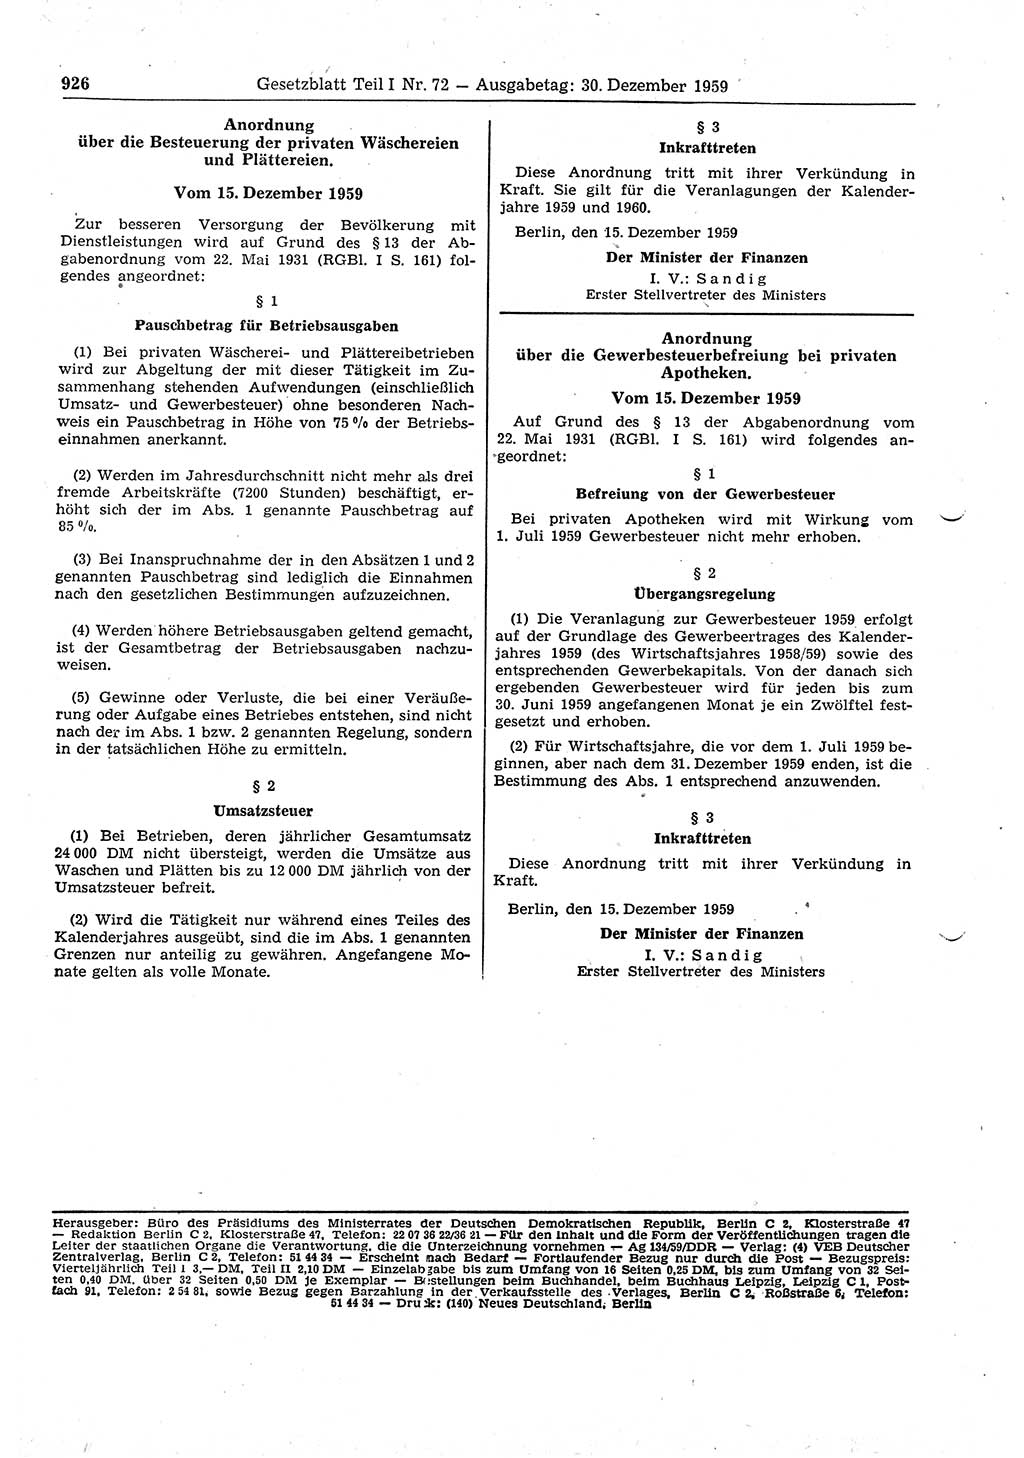 Gesetzblatt (GBl.) der Deutschen Demokratischen Republik (DDR) Teil Ⅰ 1959, Seite 926 (GBl. DDR Ⅰ 1959, S. 926)